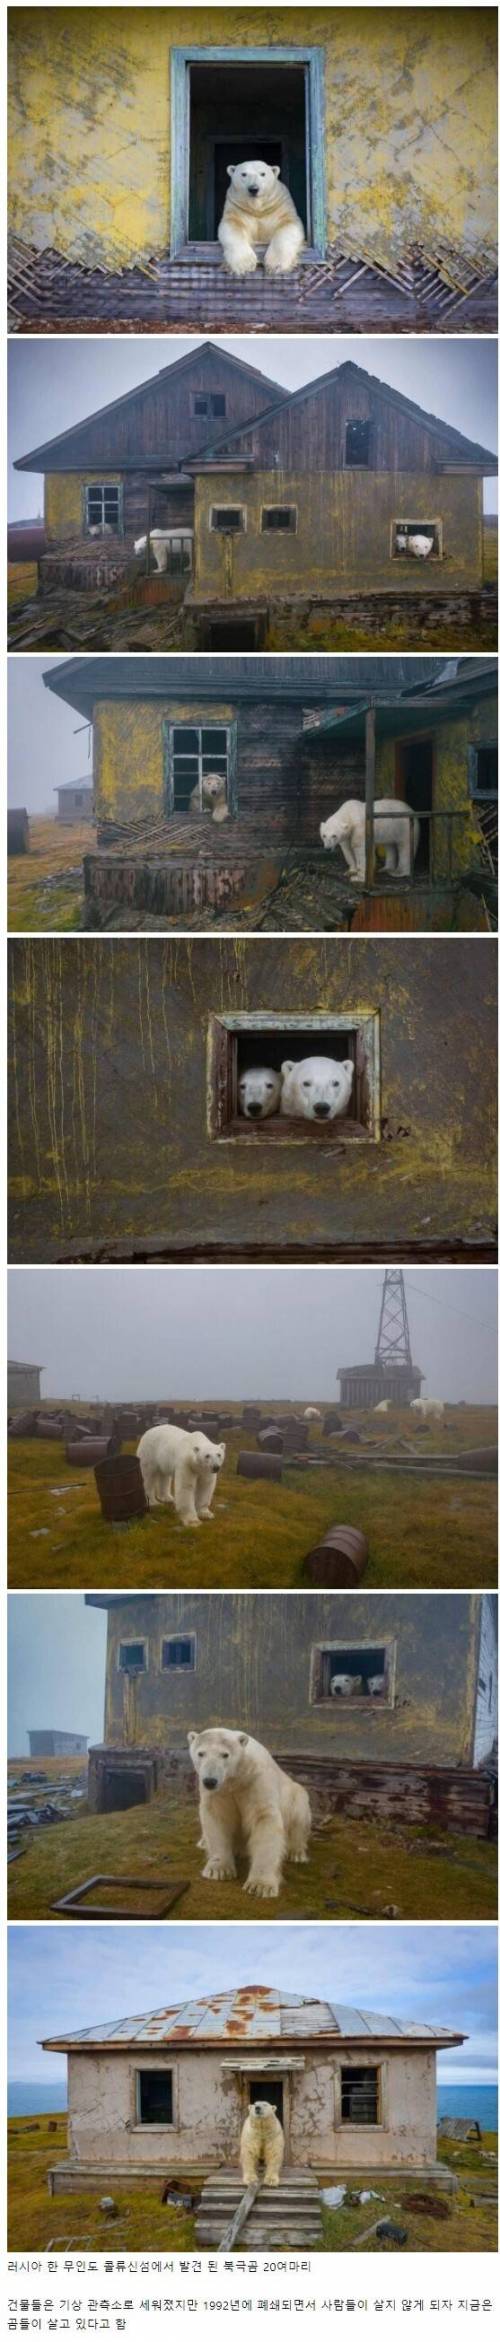 1 인간이 버린 건물에서 사는 북극곰.jpg